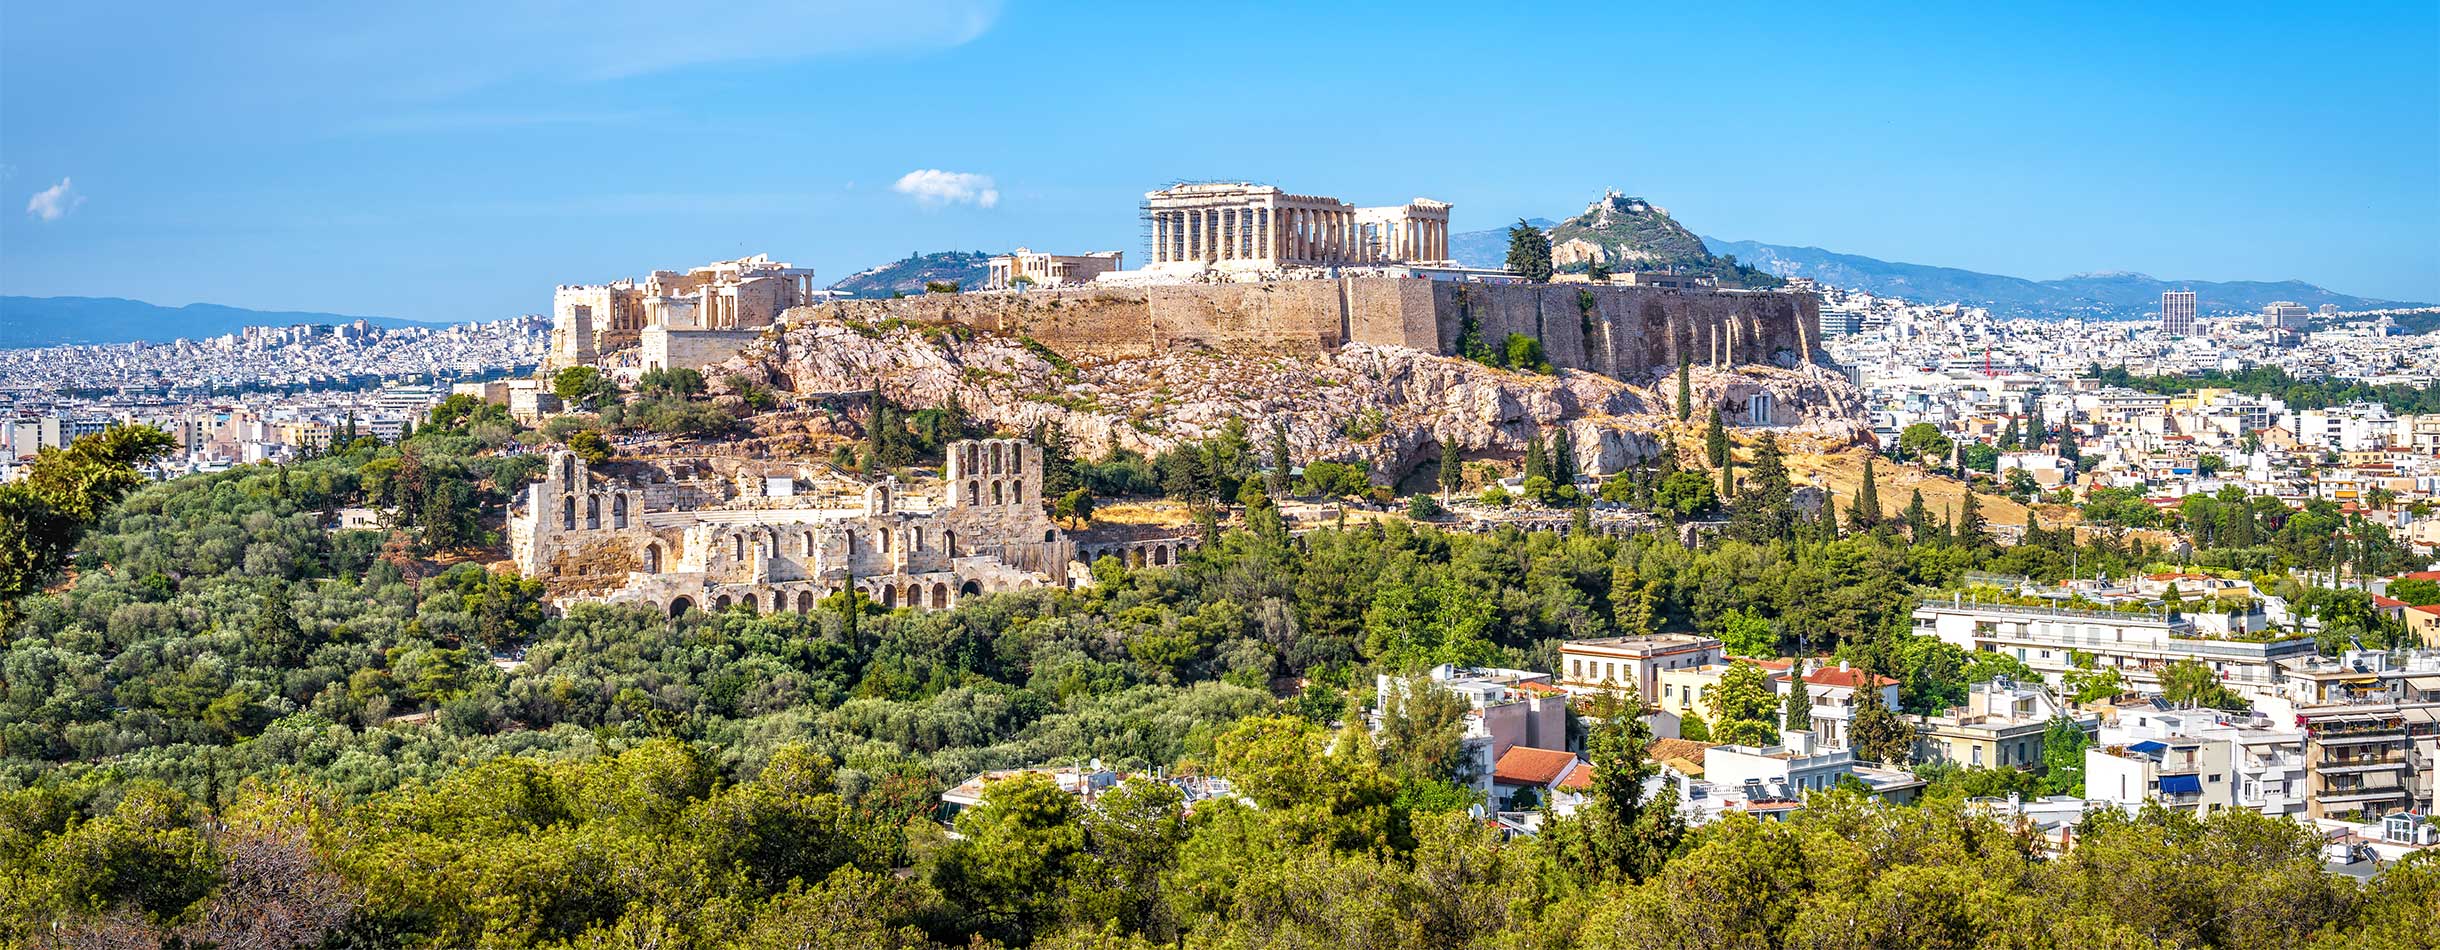 Acropolis of Athens, Greece